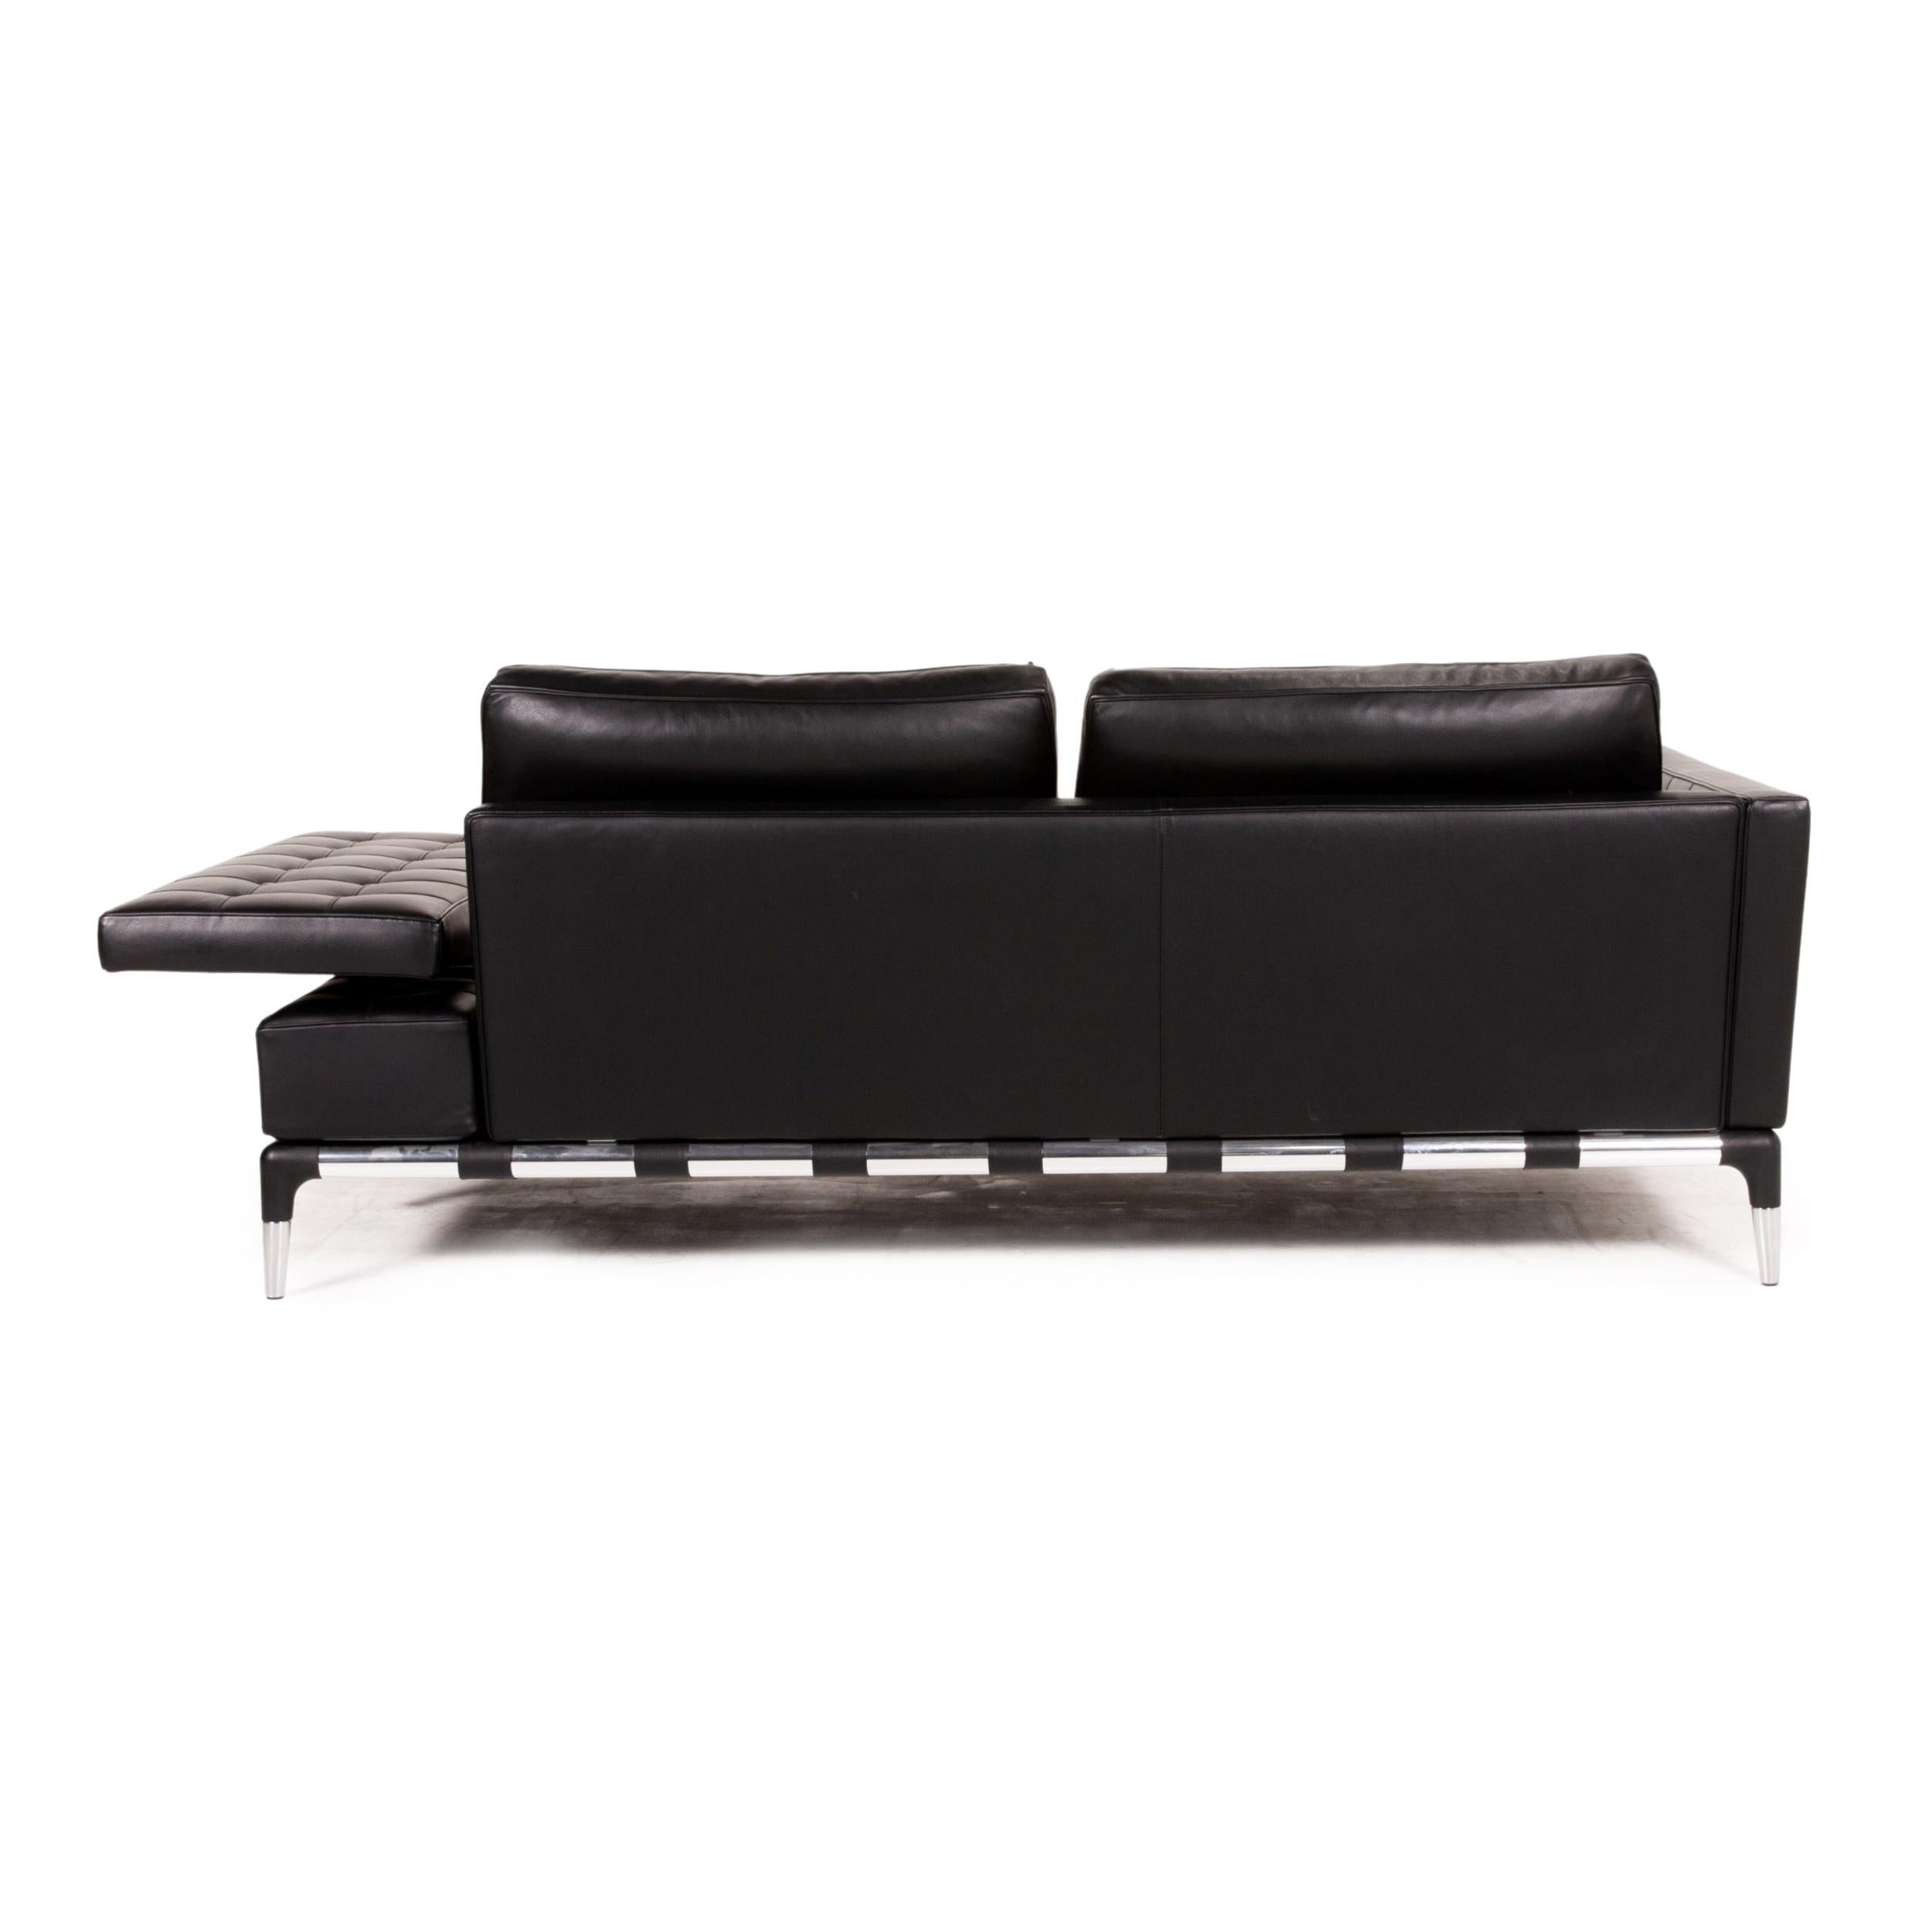 Contemporary Cassina 241 Privè Divano Leather Sofa Black Three-Seater Couch